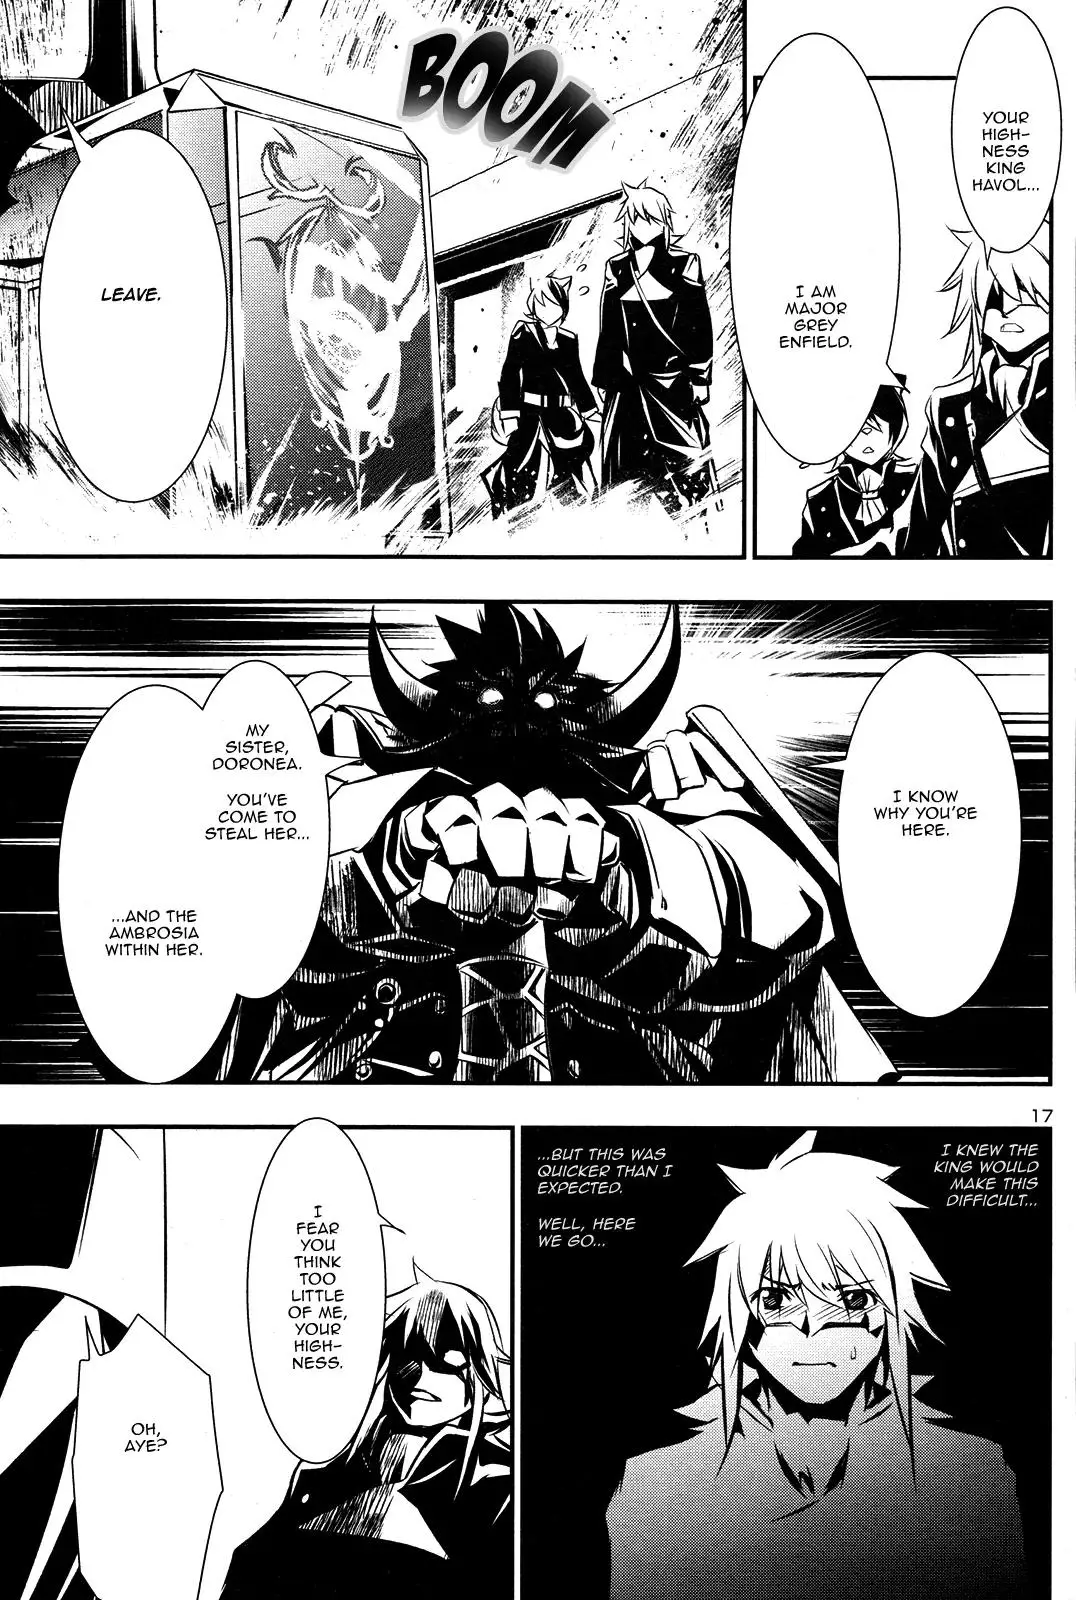 Shinju no Nectar - 9 page 15